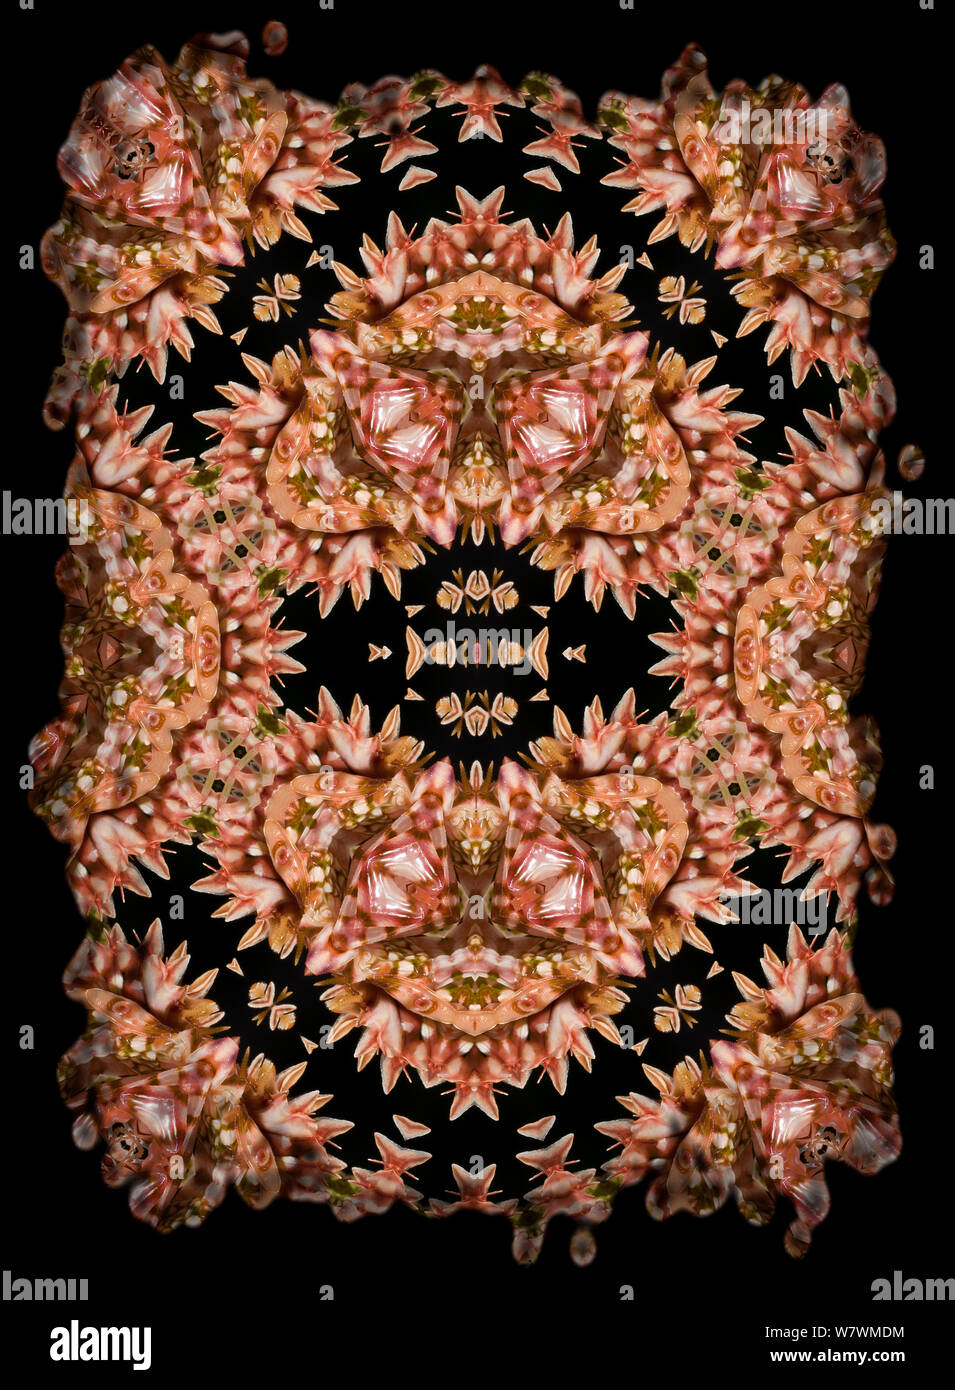 Motif kaléidoscope formé à partir de photo de fleur épineuse (Pseudocreobotra wahlbergii Mantis), formulaire rose. Limitée pour un usage éditorial jusqu'en décembre 2015 Banque D'Images